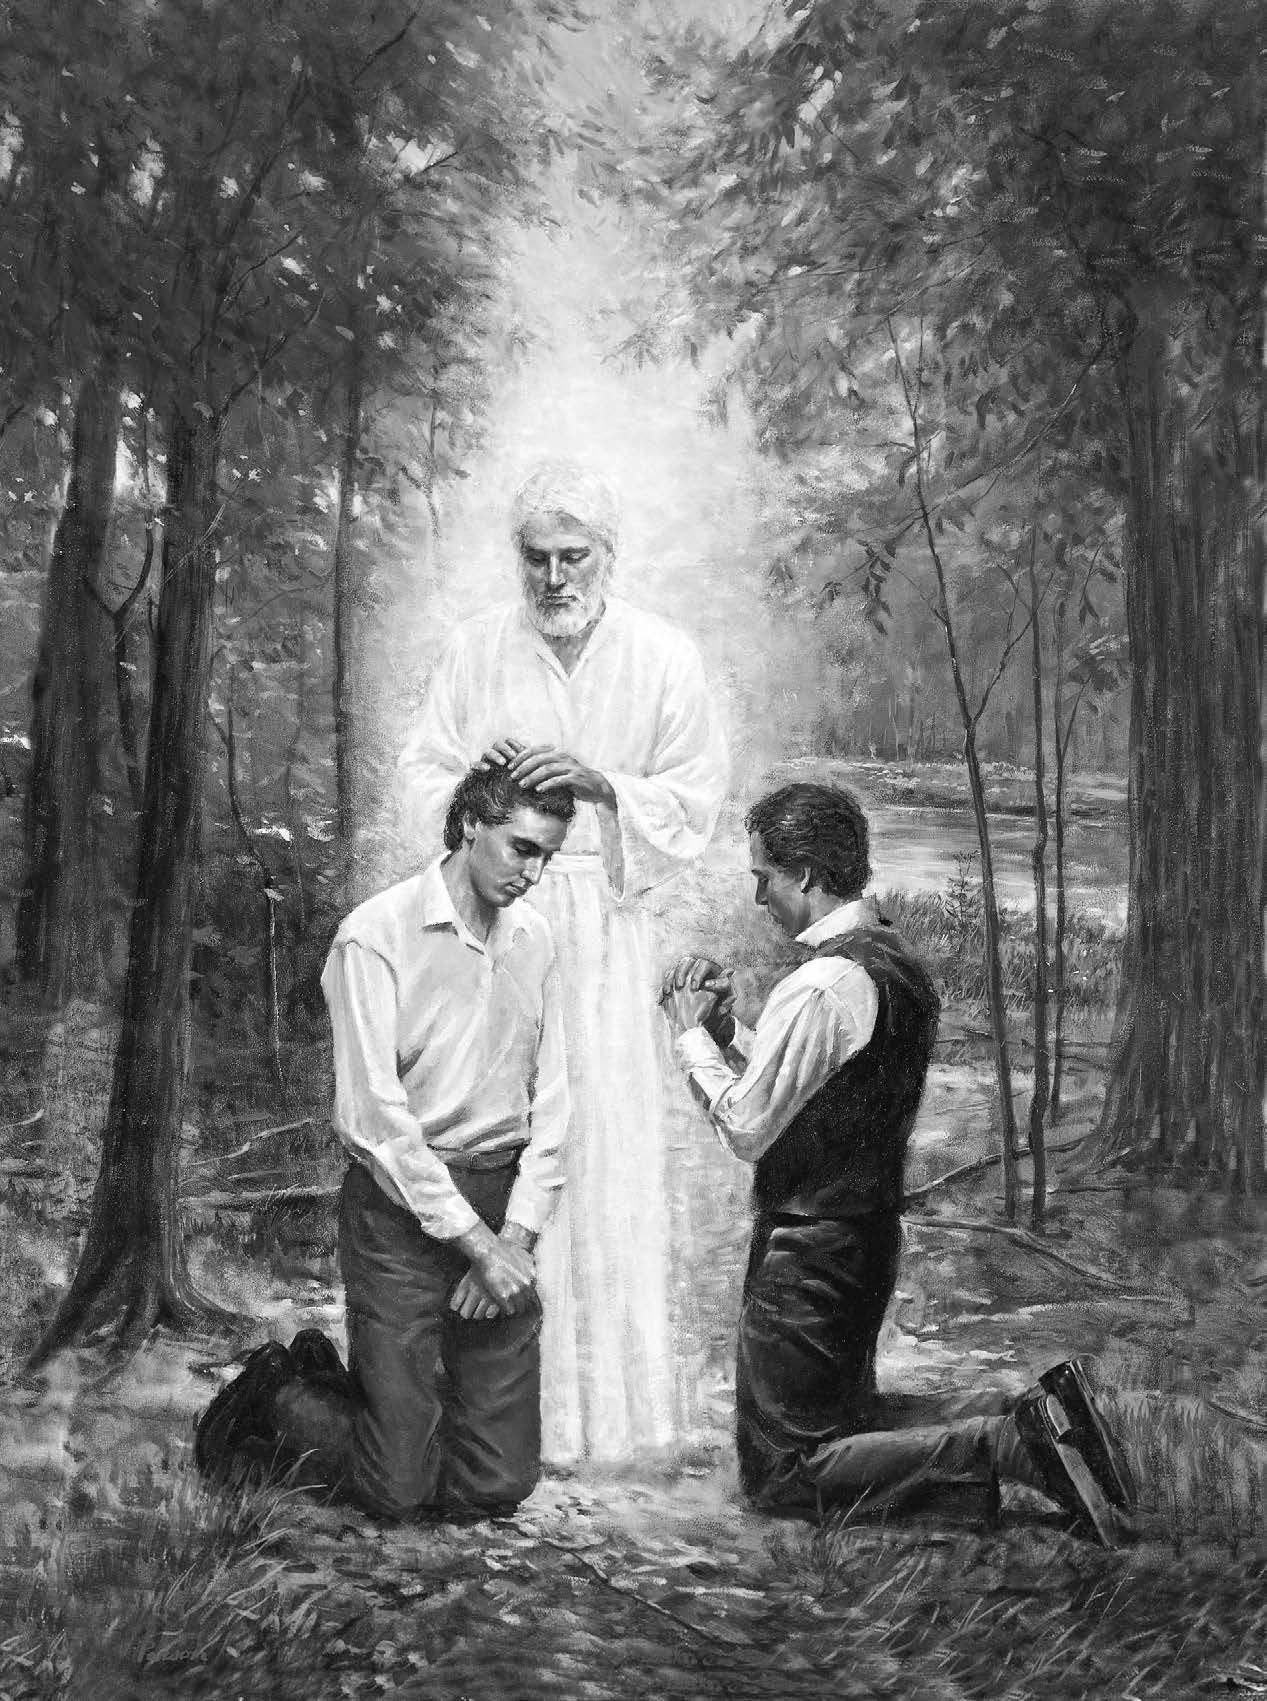 receiving the priesthood